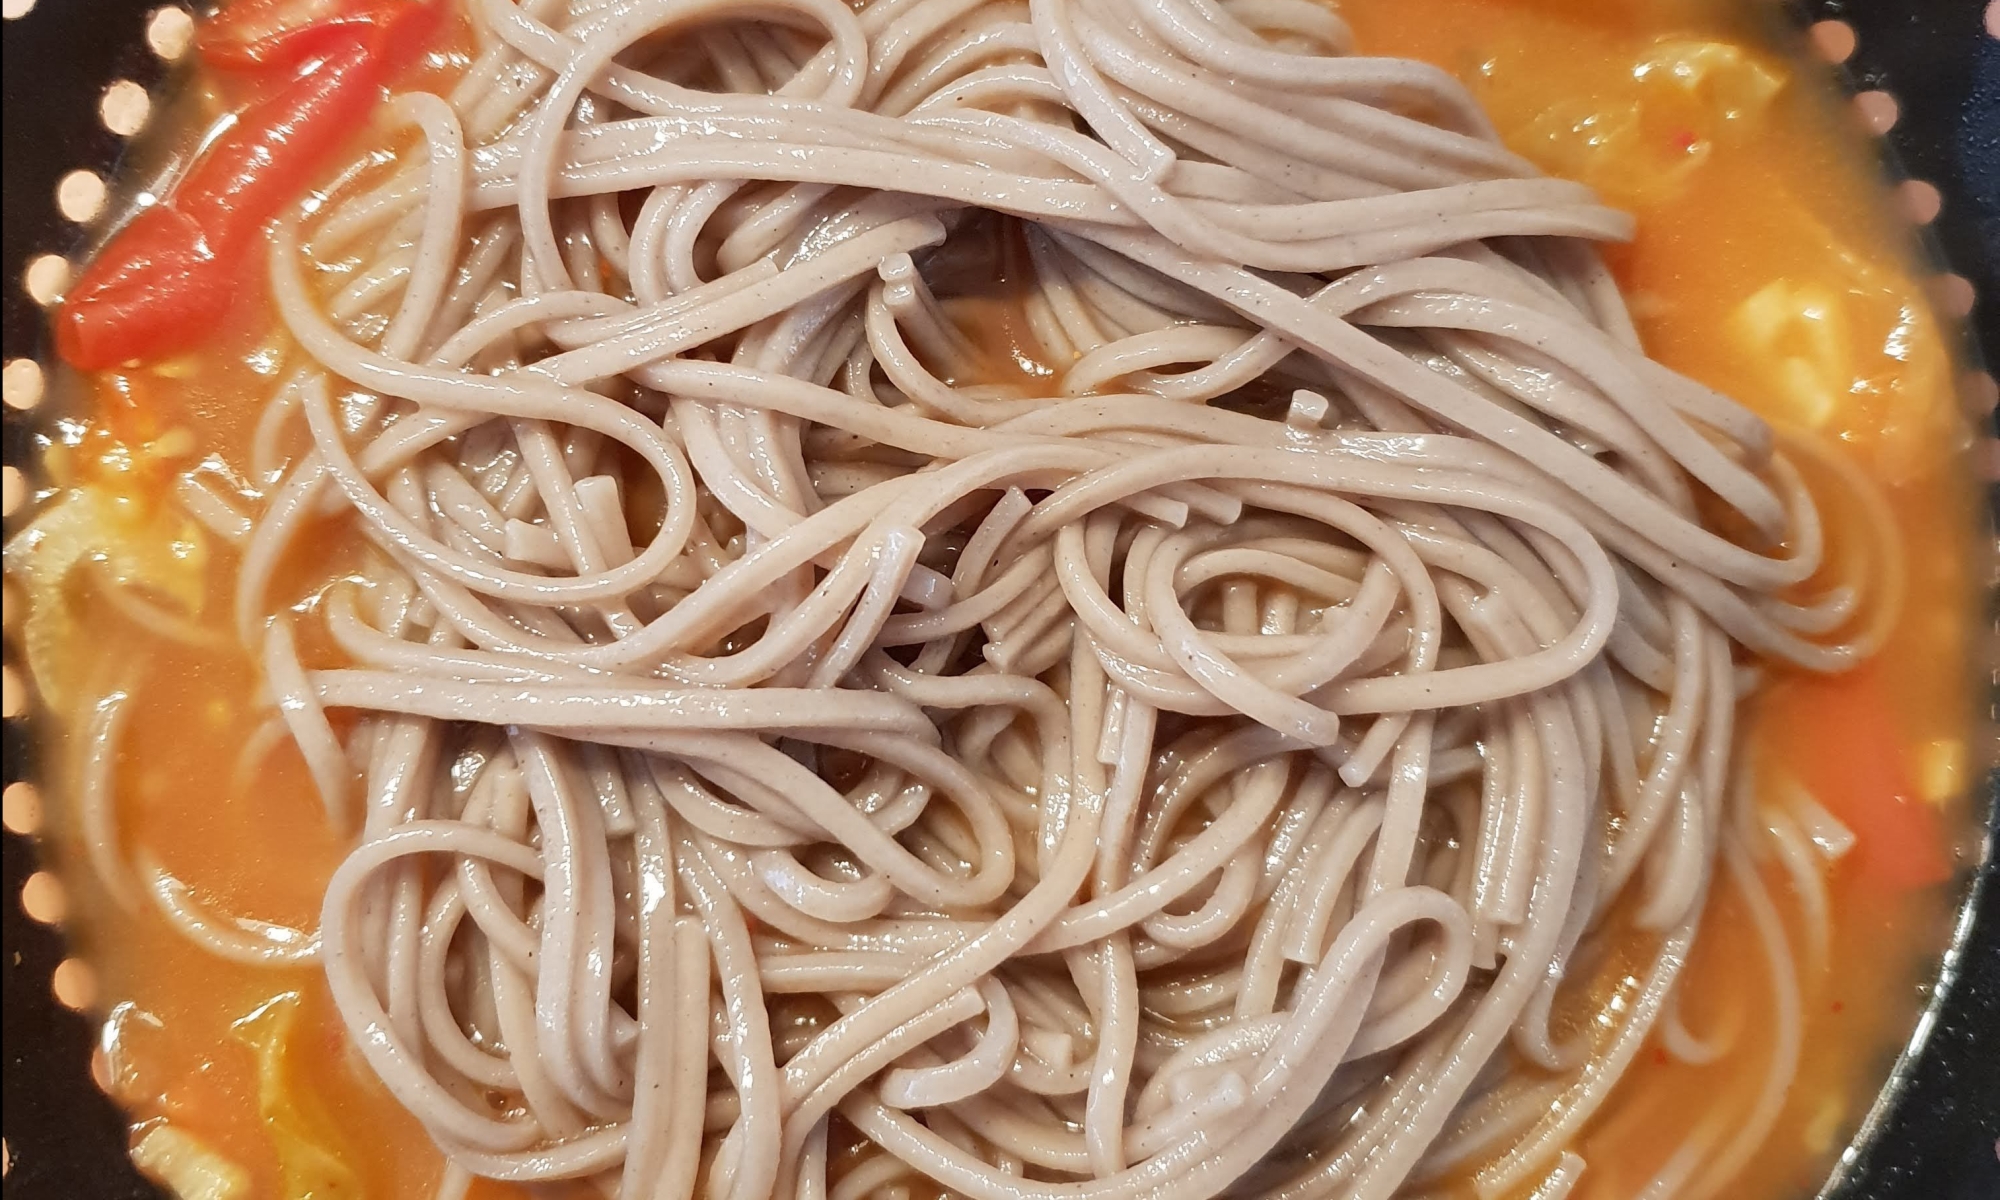 soba noodles